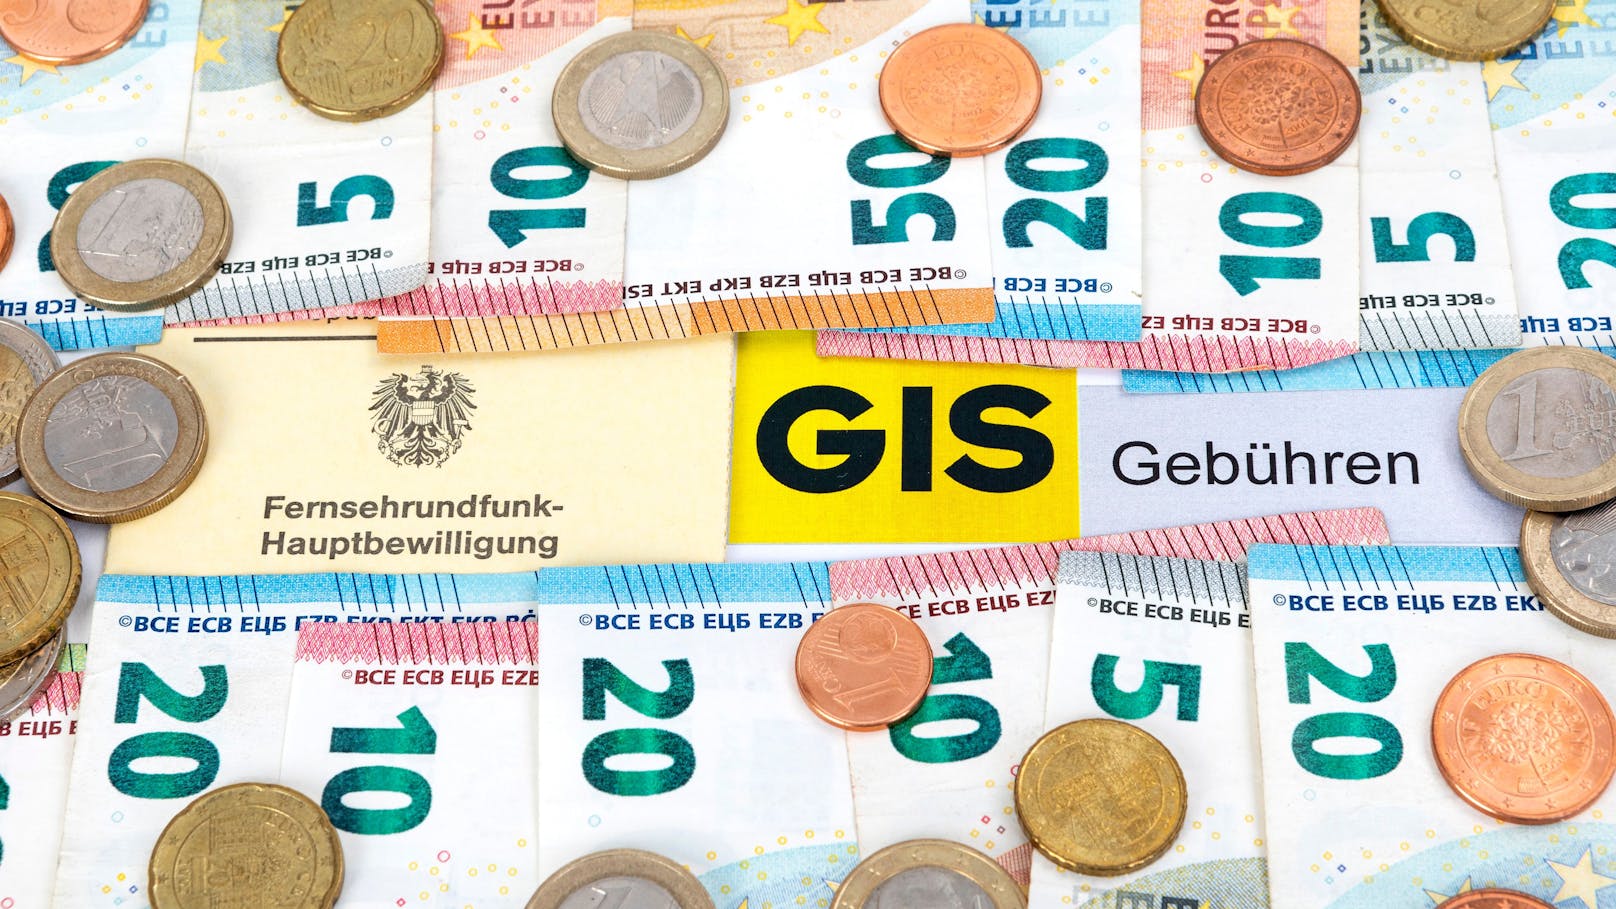 Wiener wütet über GIS: "Wurde einfach angemeldet!"